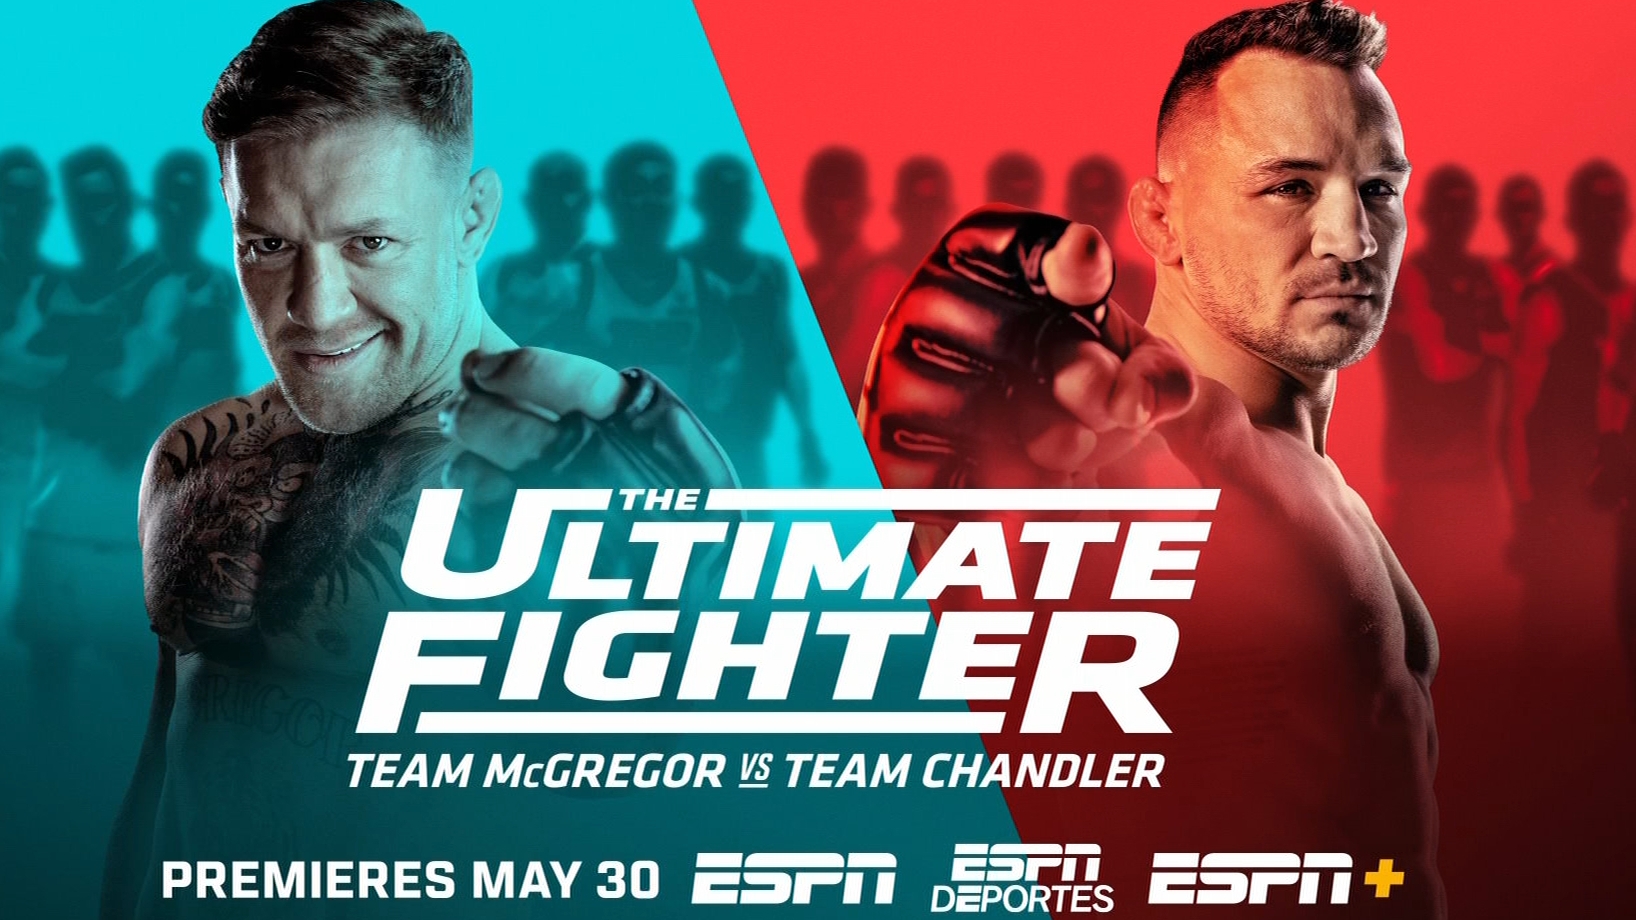 The Ultimate Fighter: Team McGregor vs. Team Chandler trailer